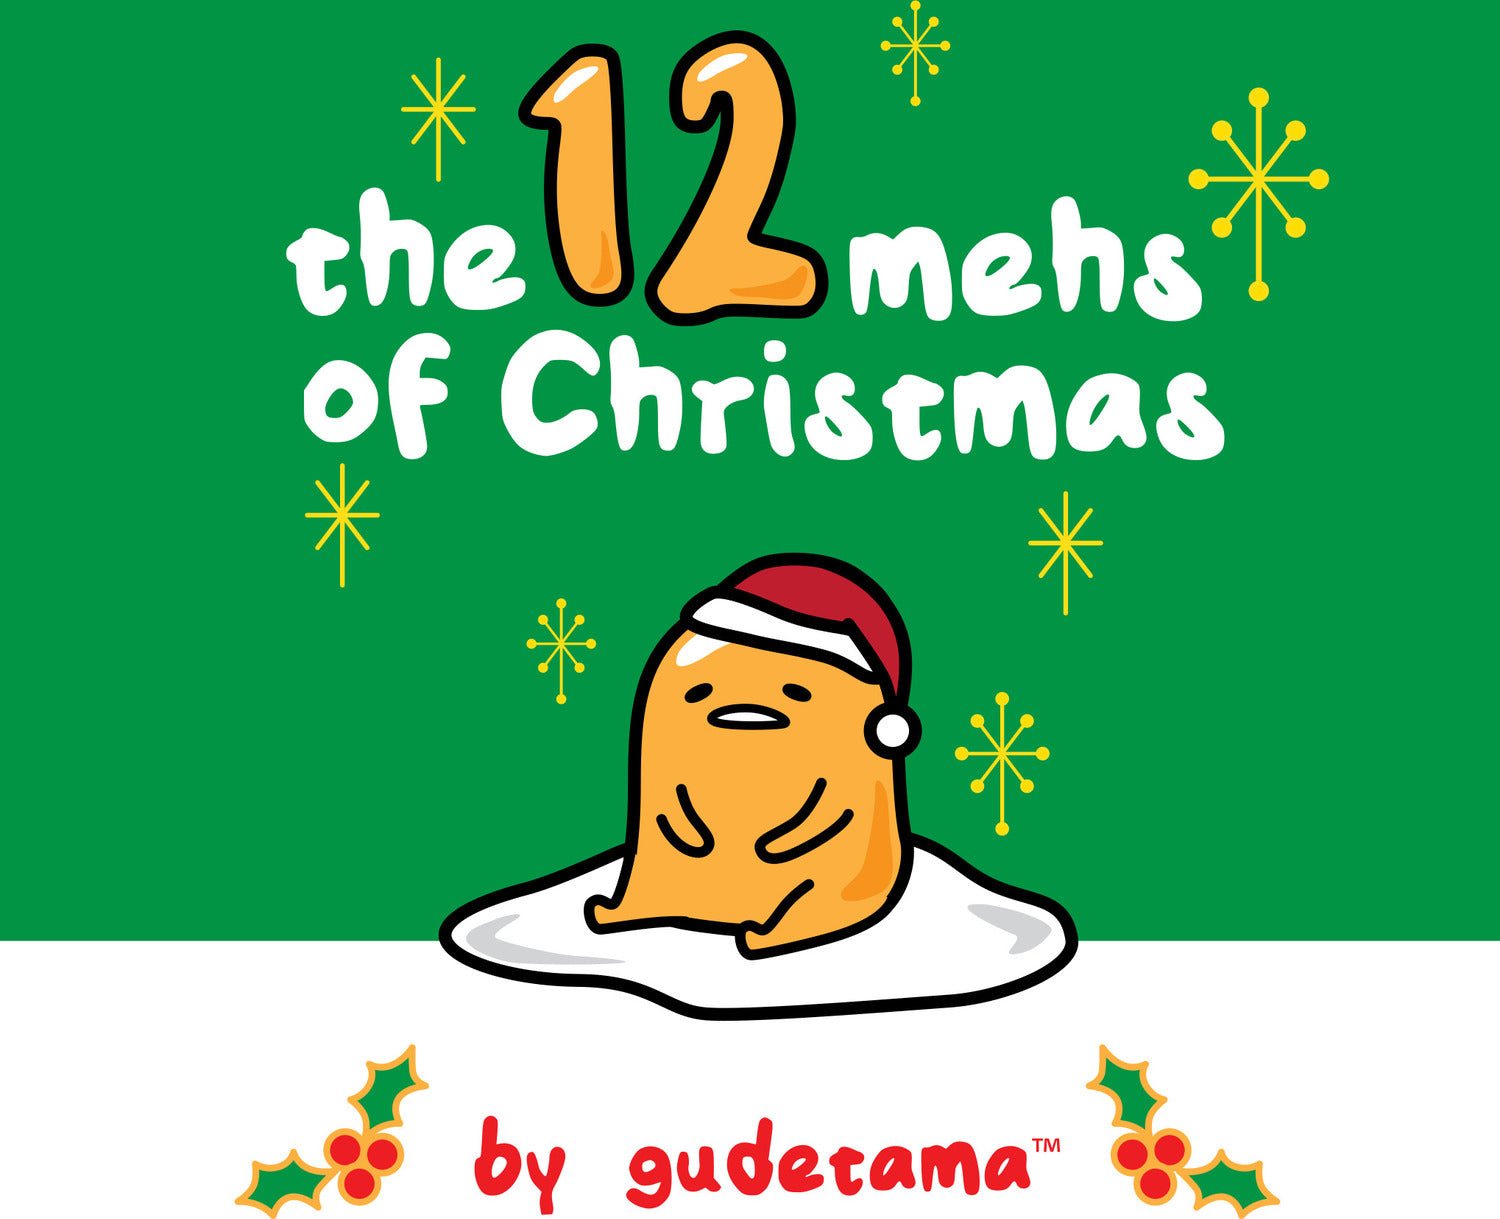 The Twelve Mehs of Christmas by Gudetama